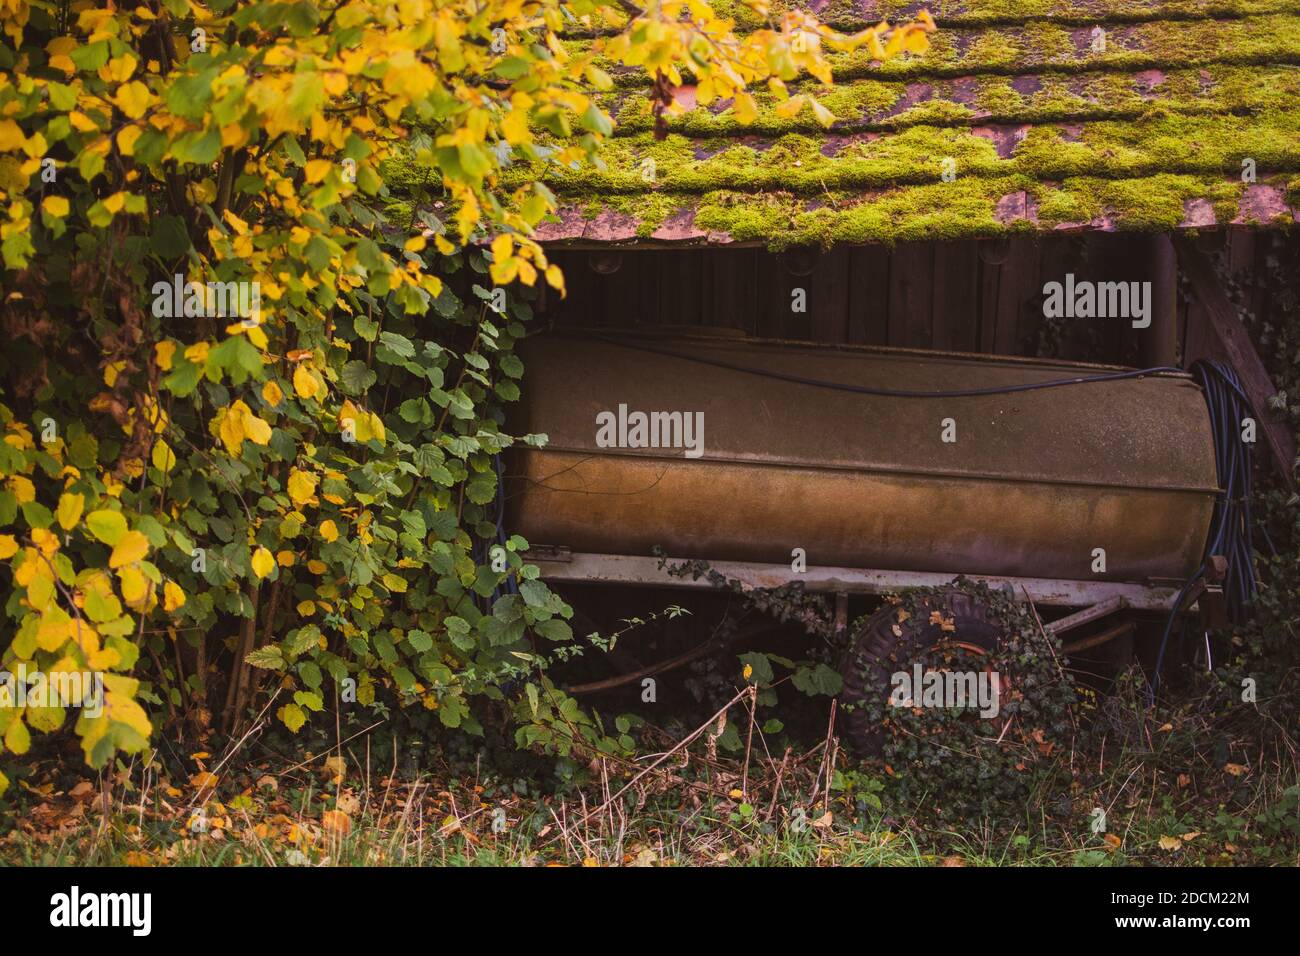 Verlassene, verlorene Ort mit sehr alten und beschädigten Fahrzeug zum Entspannen und grünen Mosh. Herbst gespenstisch leerer Wald. Einsamkeit und Leerheit Konzept. Stockfoto